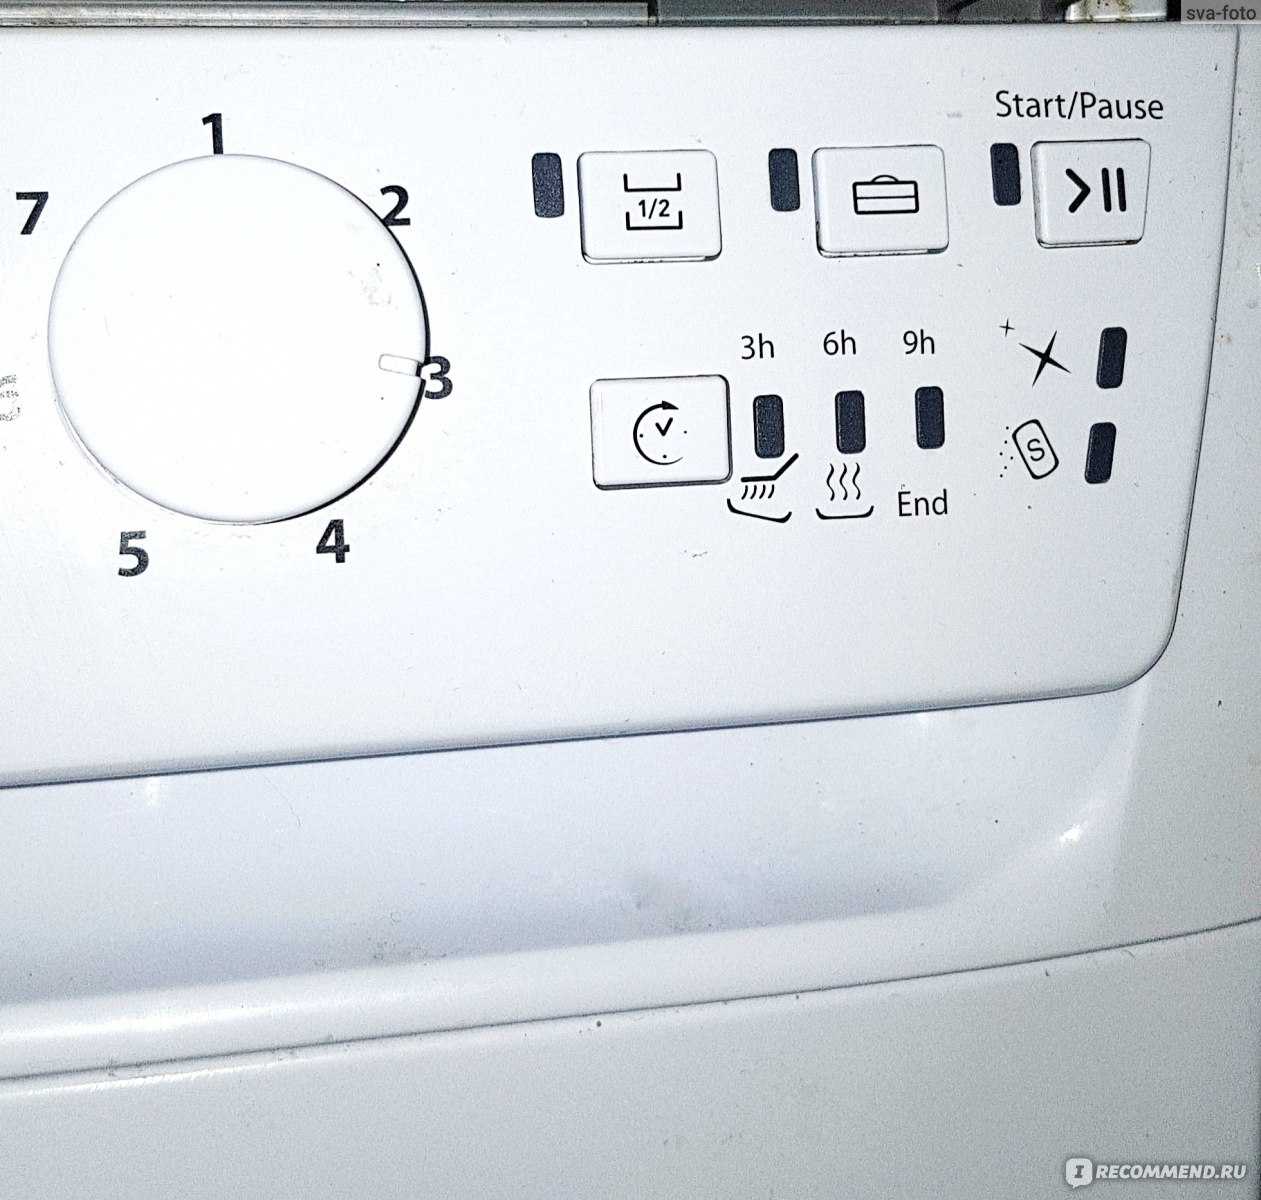 Ремонт посудомоечной машины своими руками и коды неисправностей пмм — викистрой